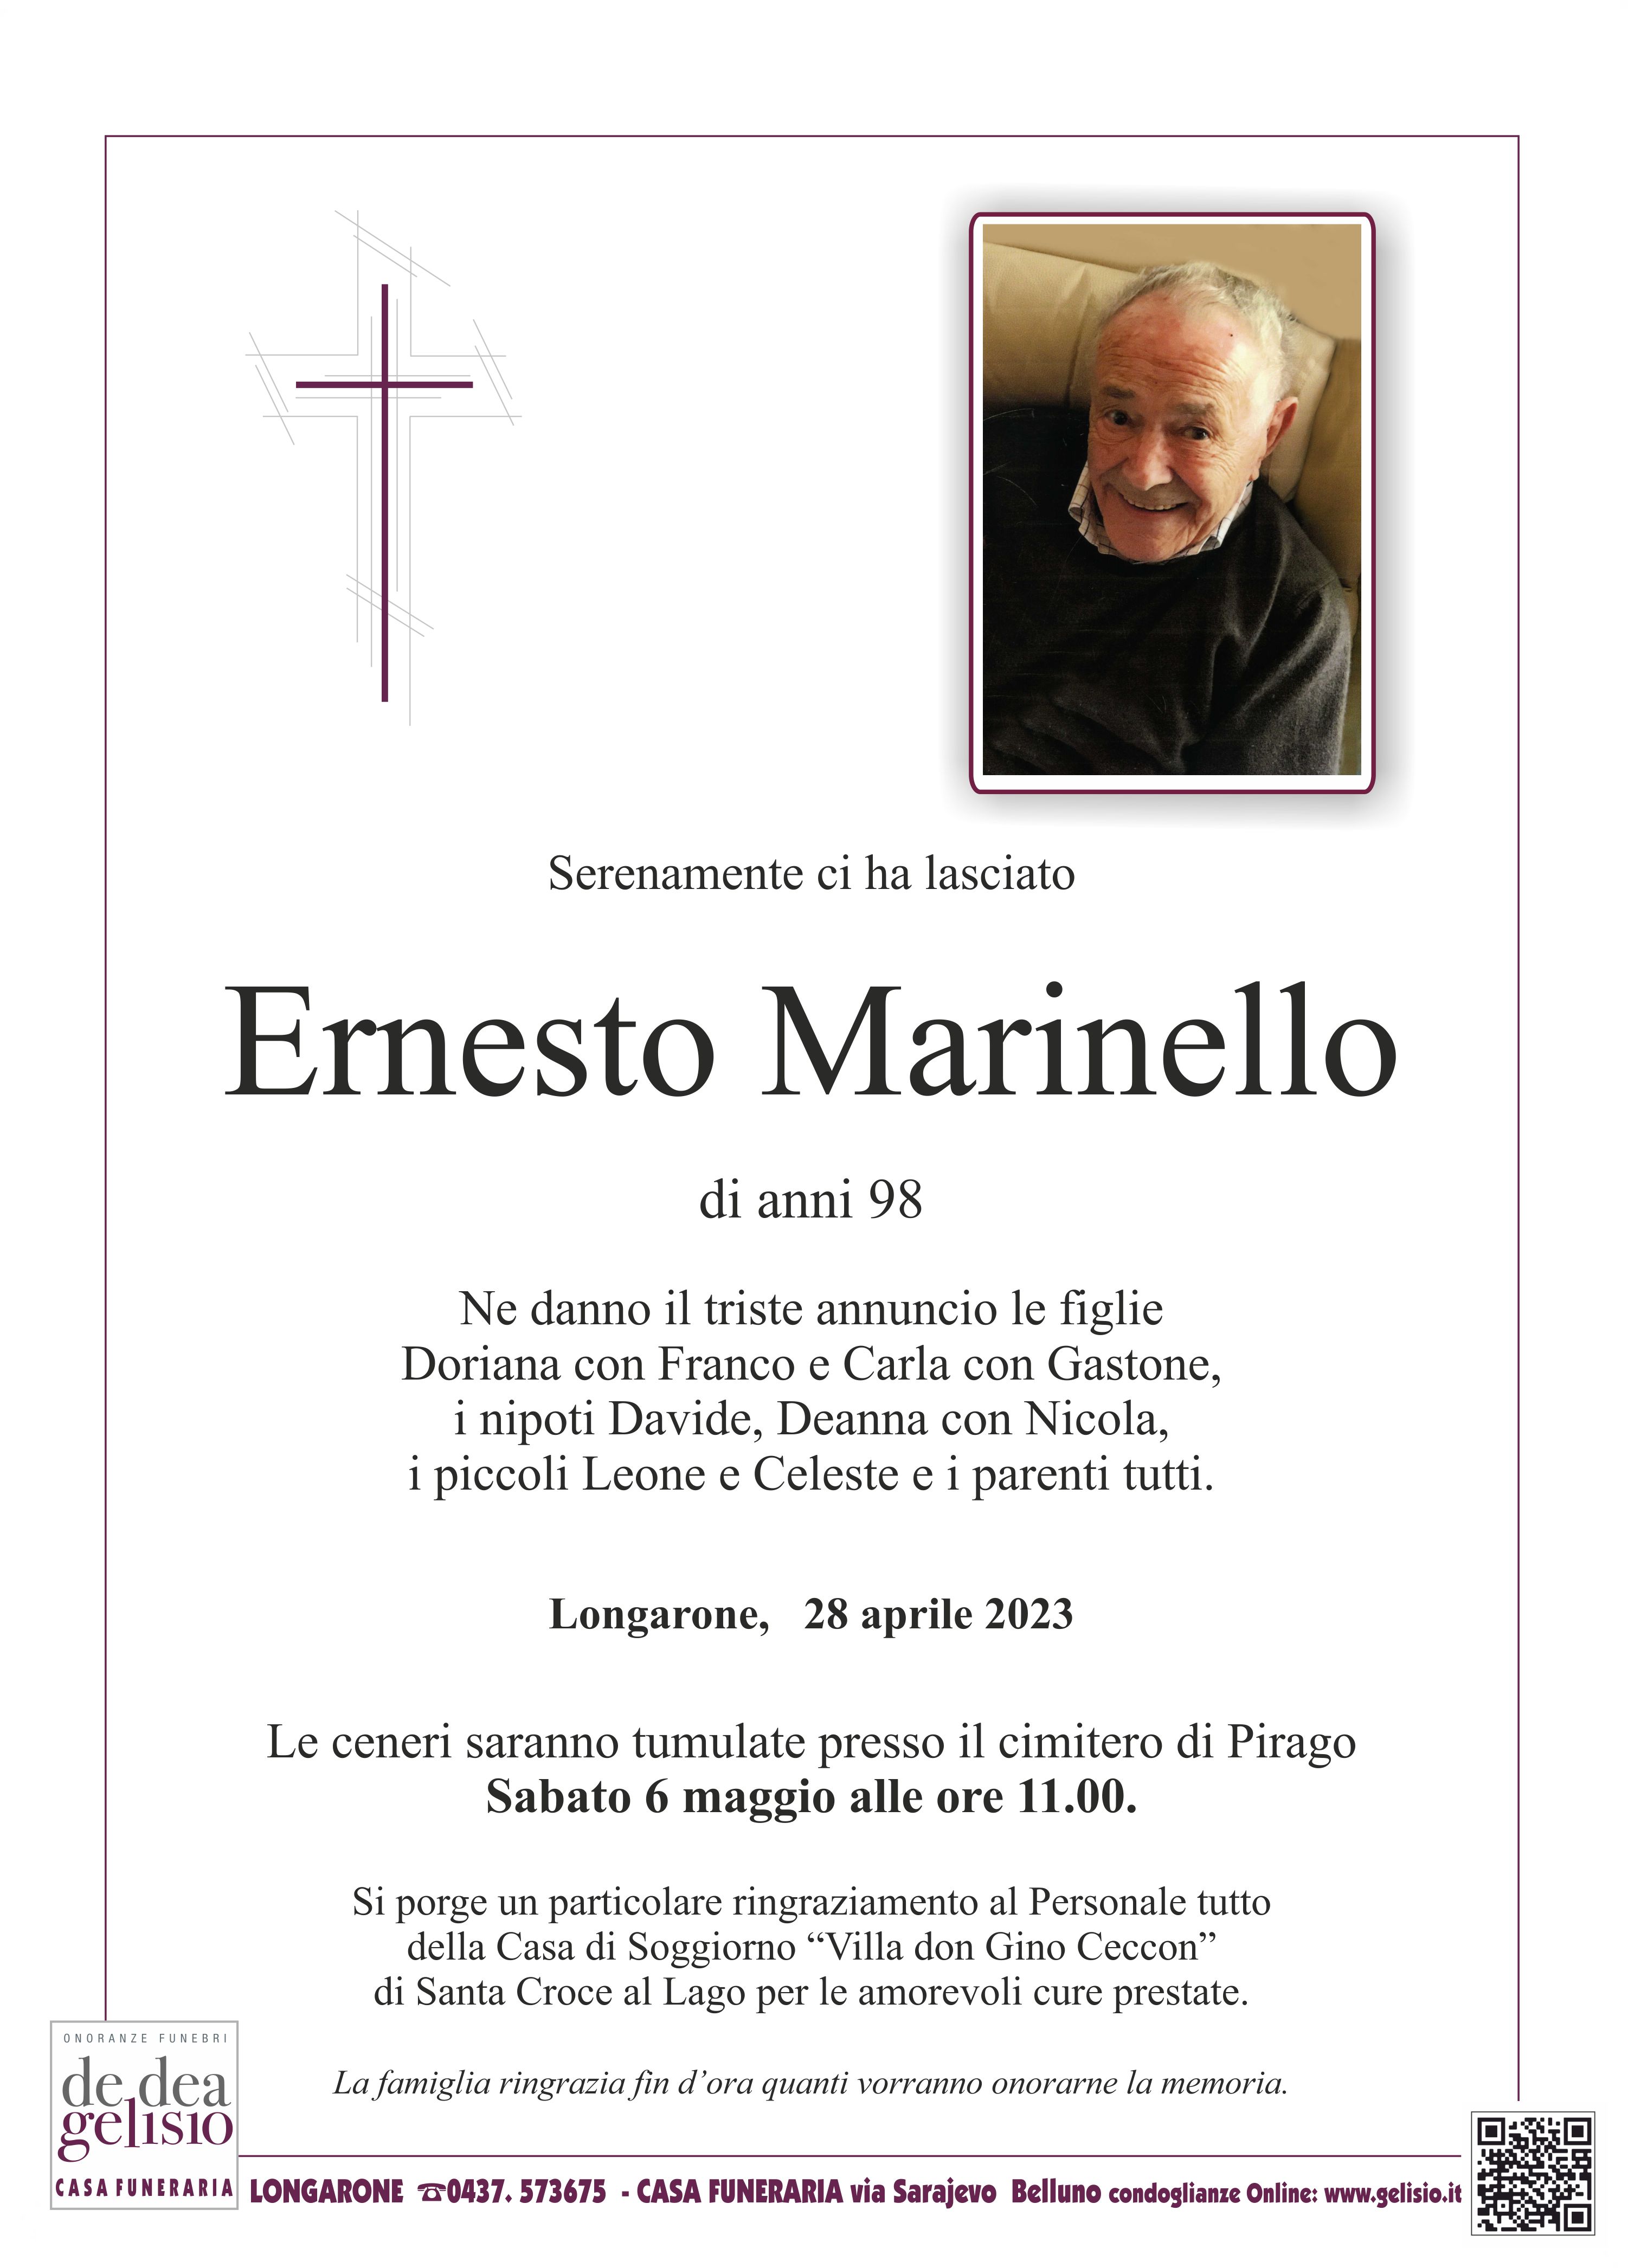 Marinello Ernest